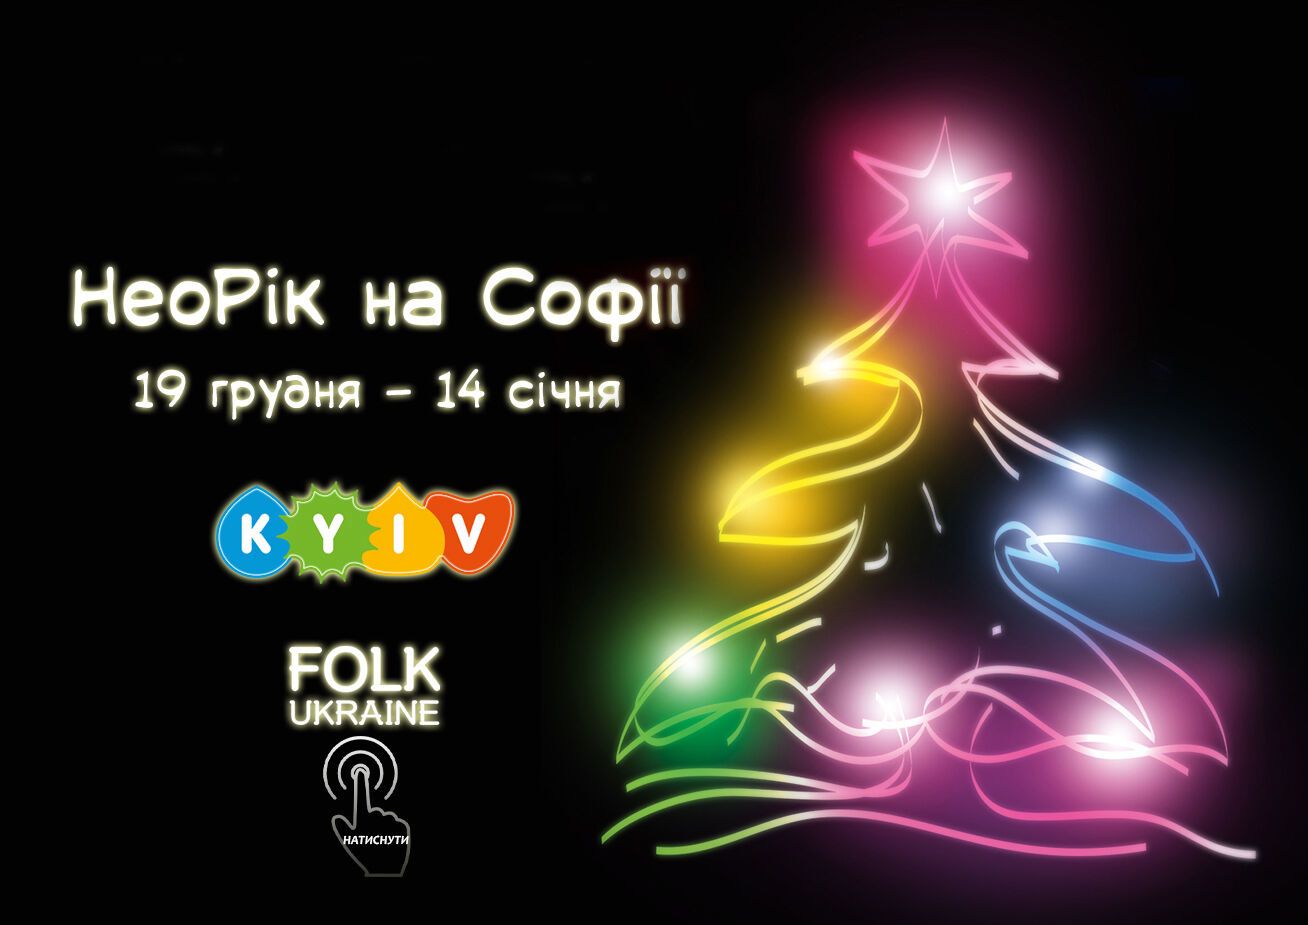 Стало известно, когда и откуда в Киев привезут главную новогоднюю елку страны